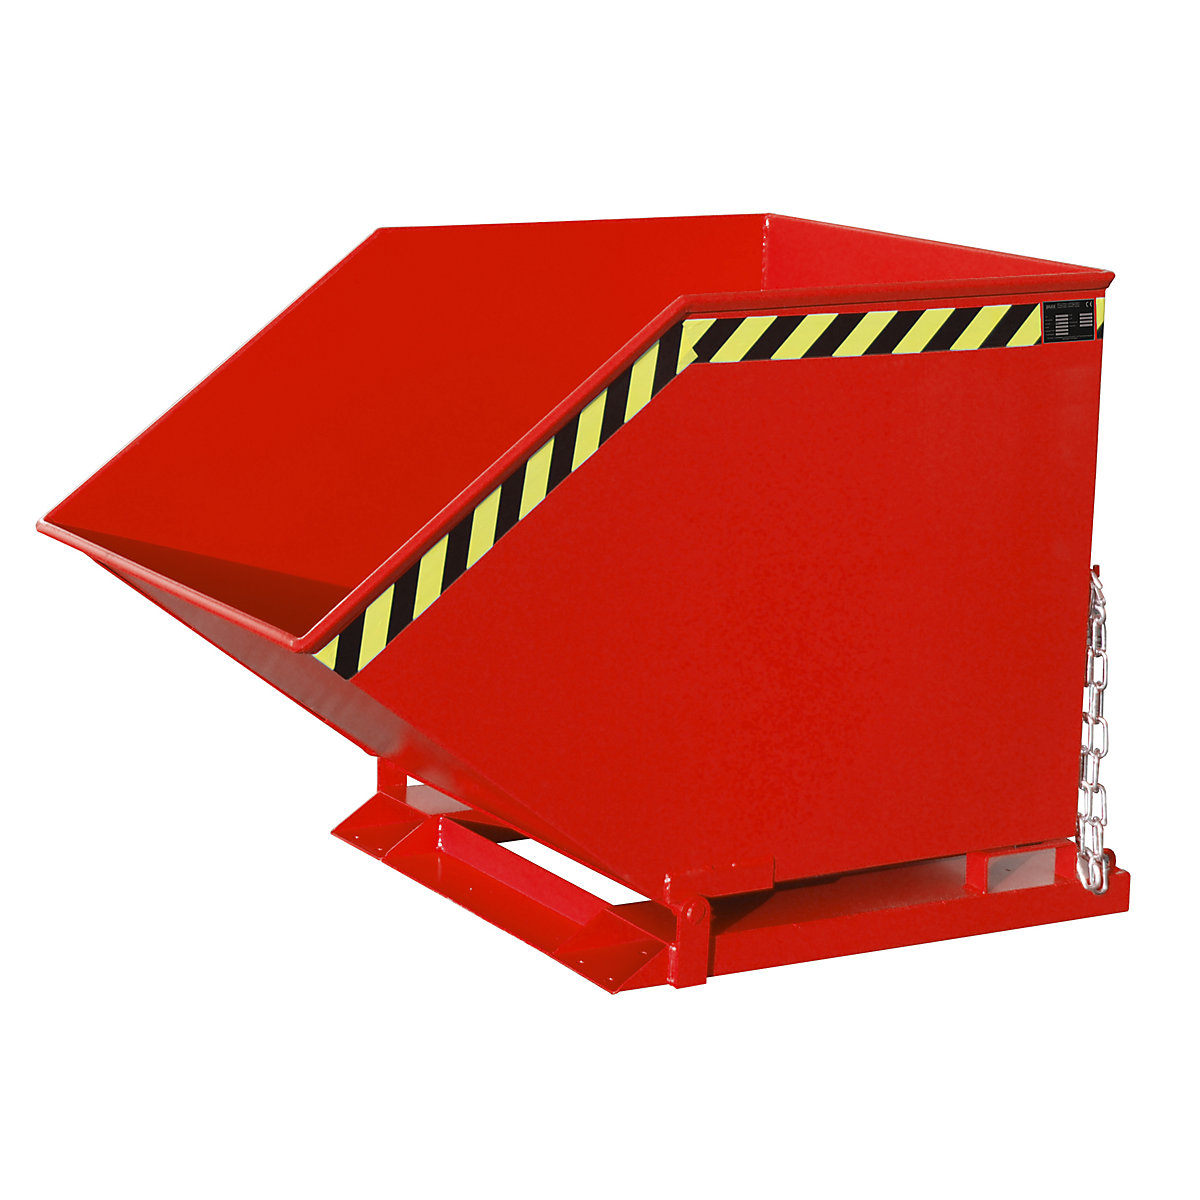 Cavidade de basculação com mecanismo basculante – eurokraft pro, forma de caixa, volume 0,8 m³, vermelho RAL 3000-6